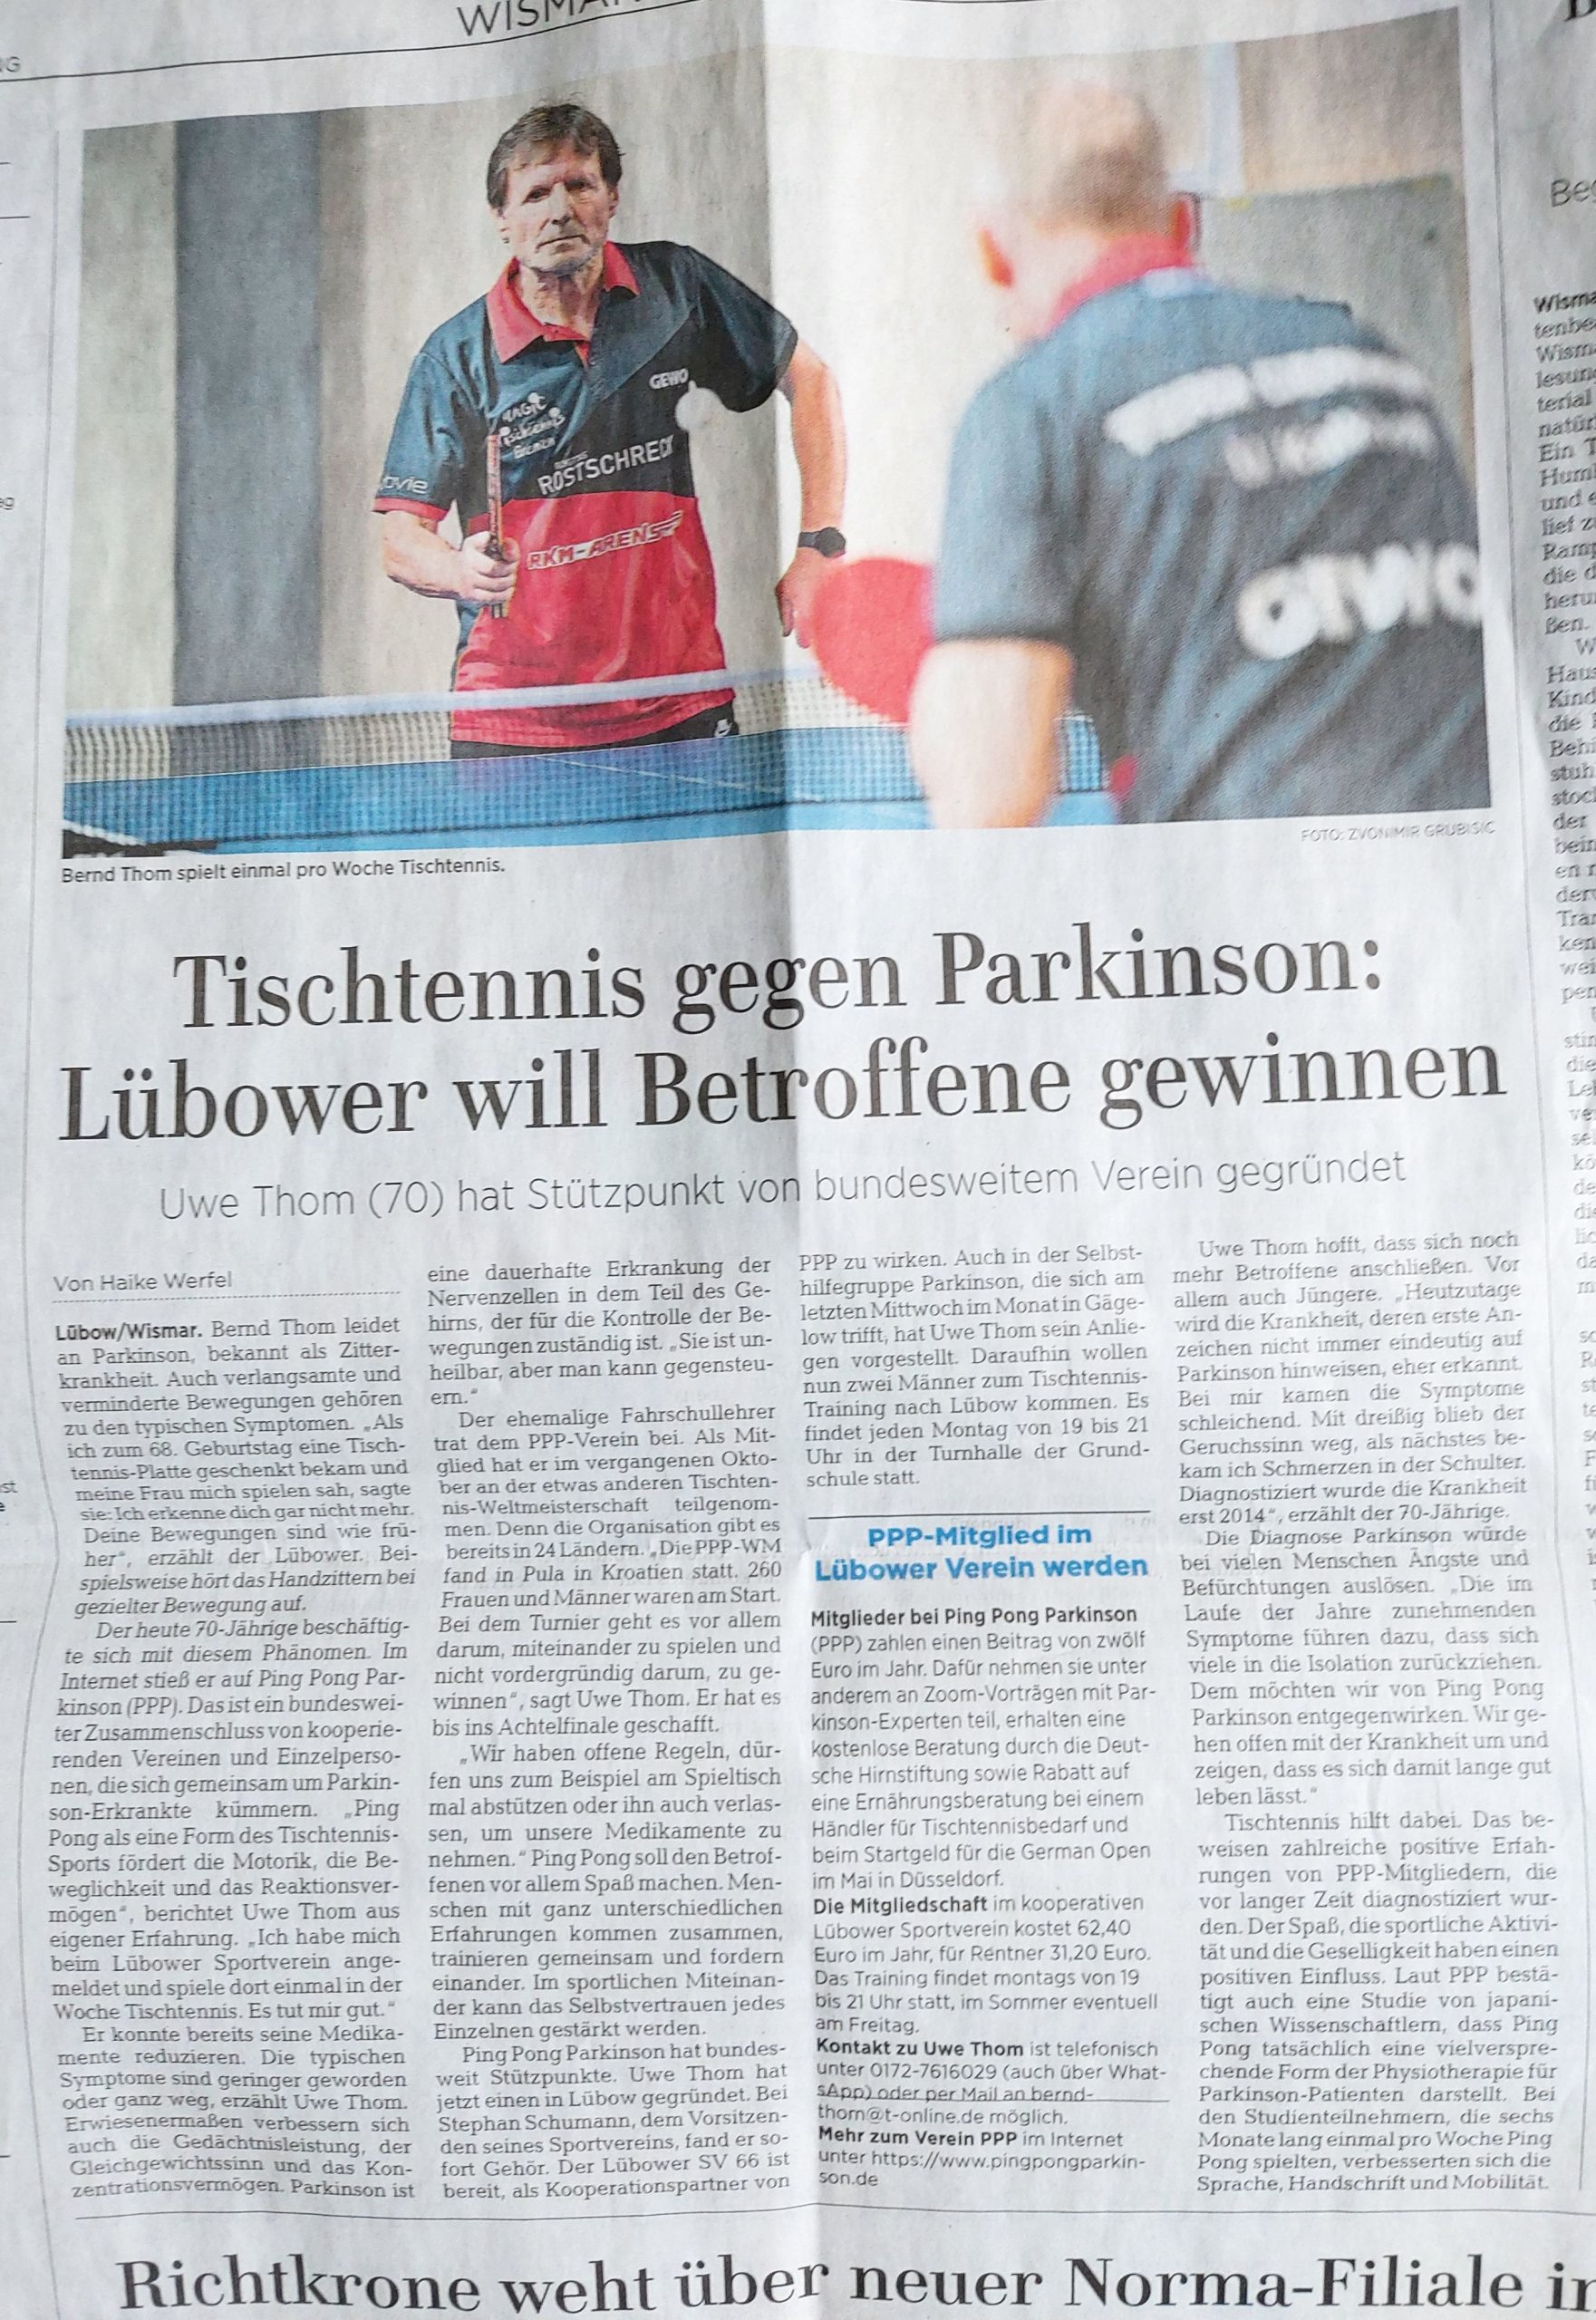 Tischtennis gegen Parkinson: Lübower will Betroffene gewinnen